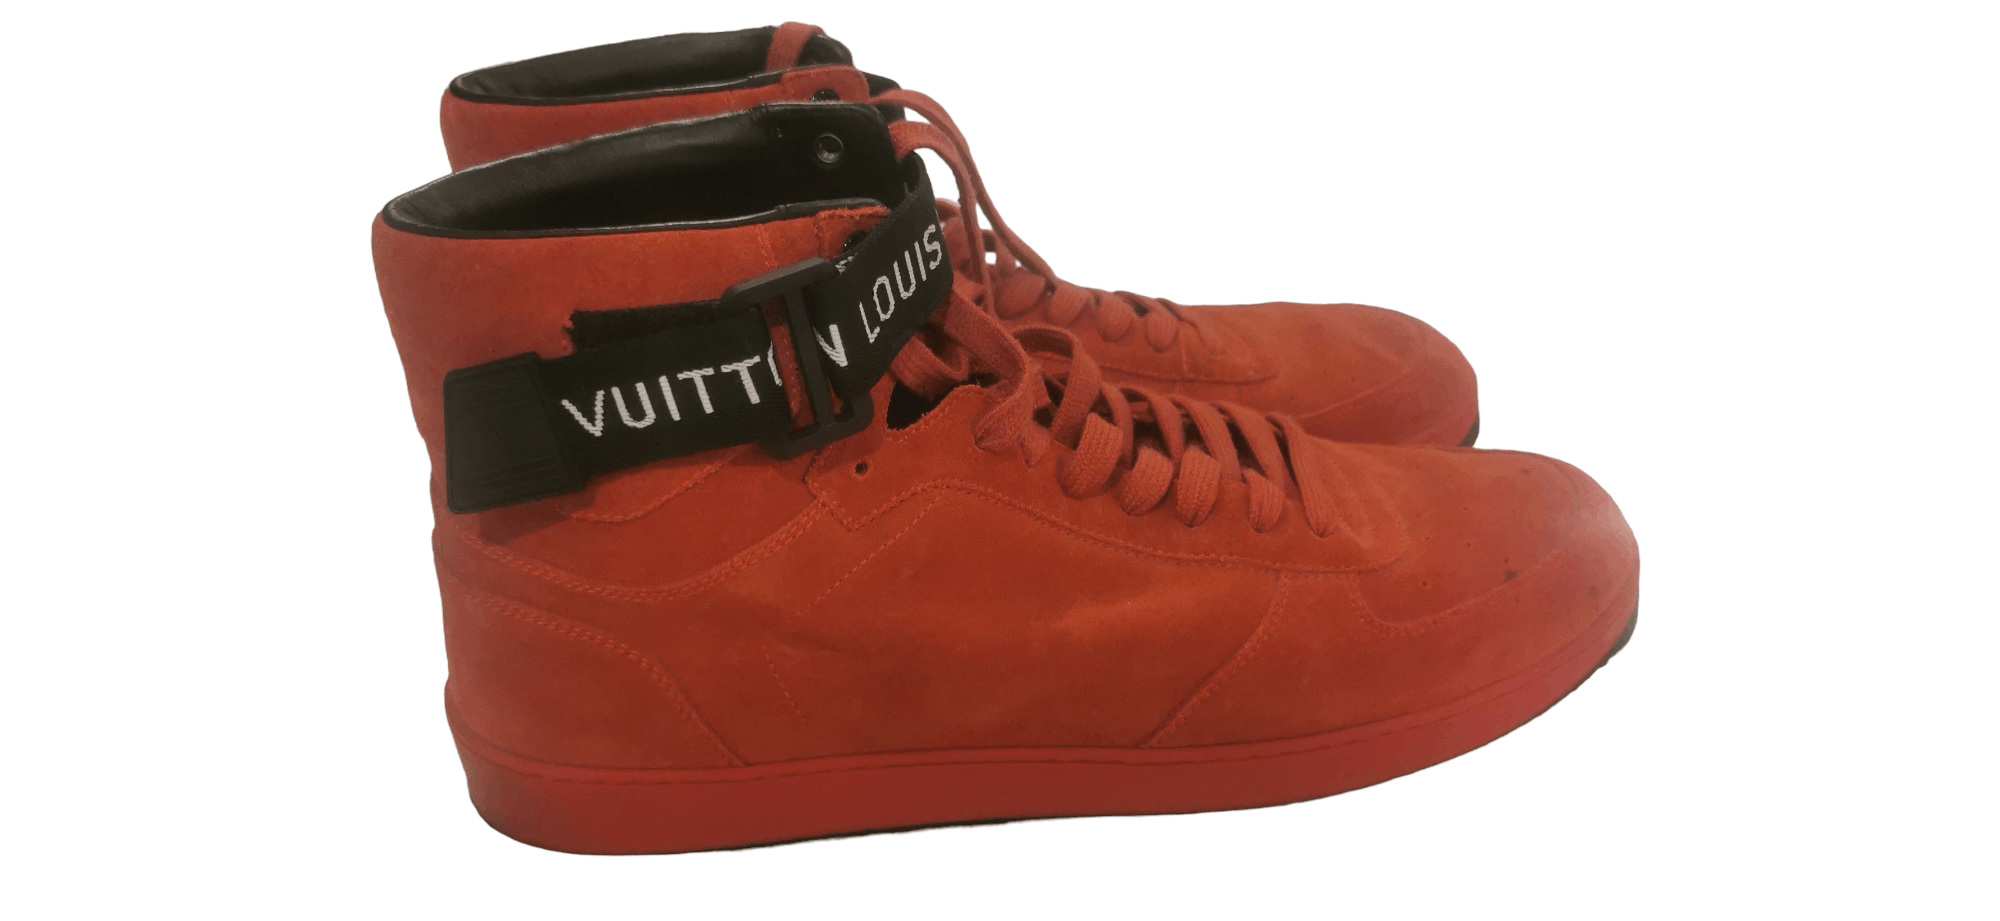 Louis Vuitton Rivoli Damier Trainers Size 9.5